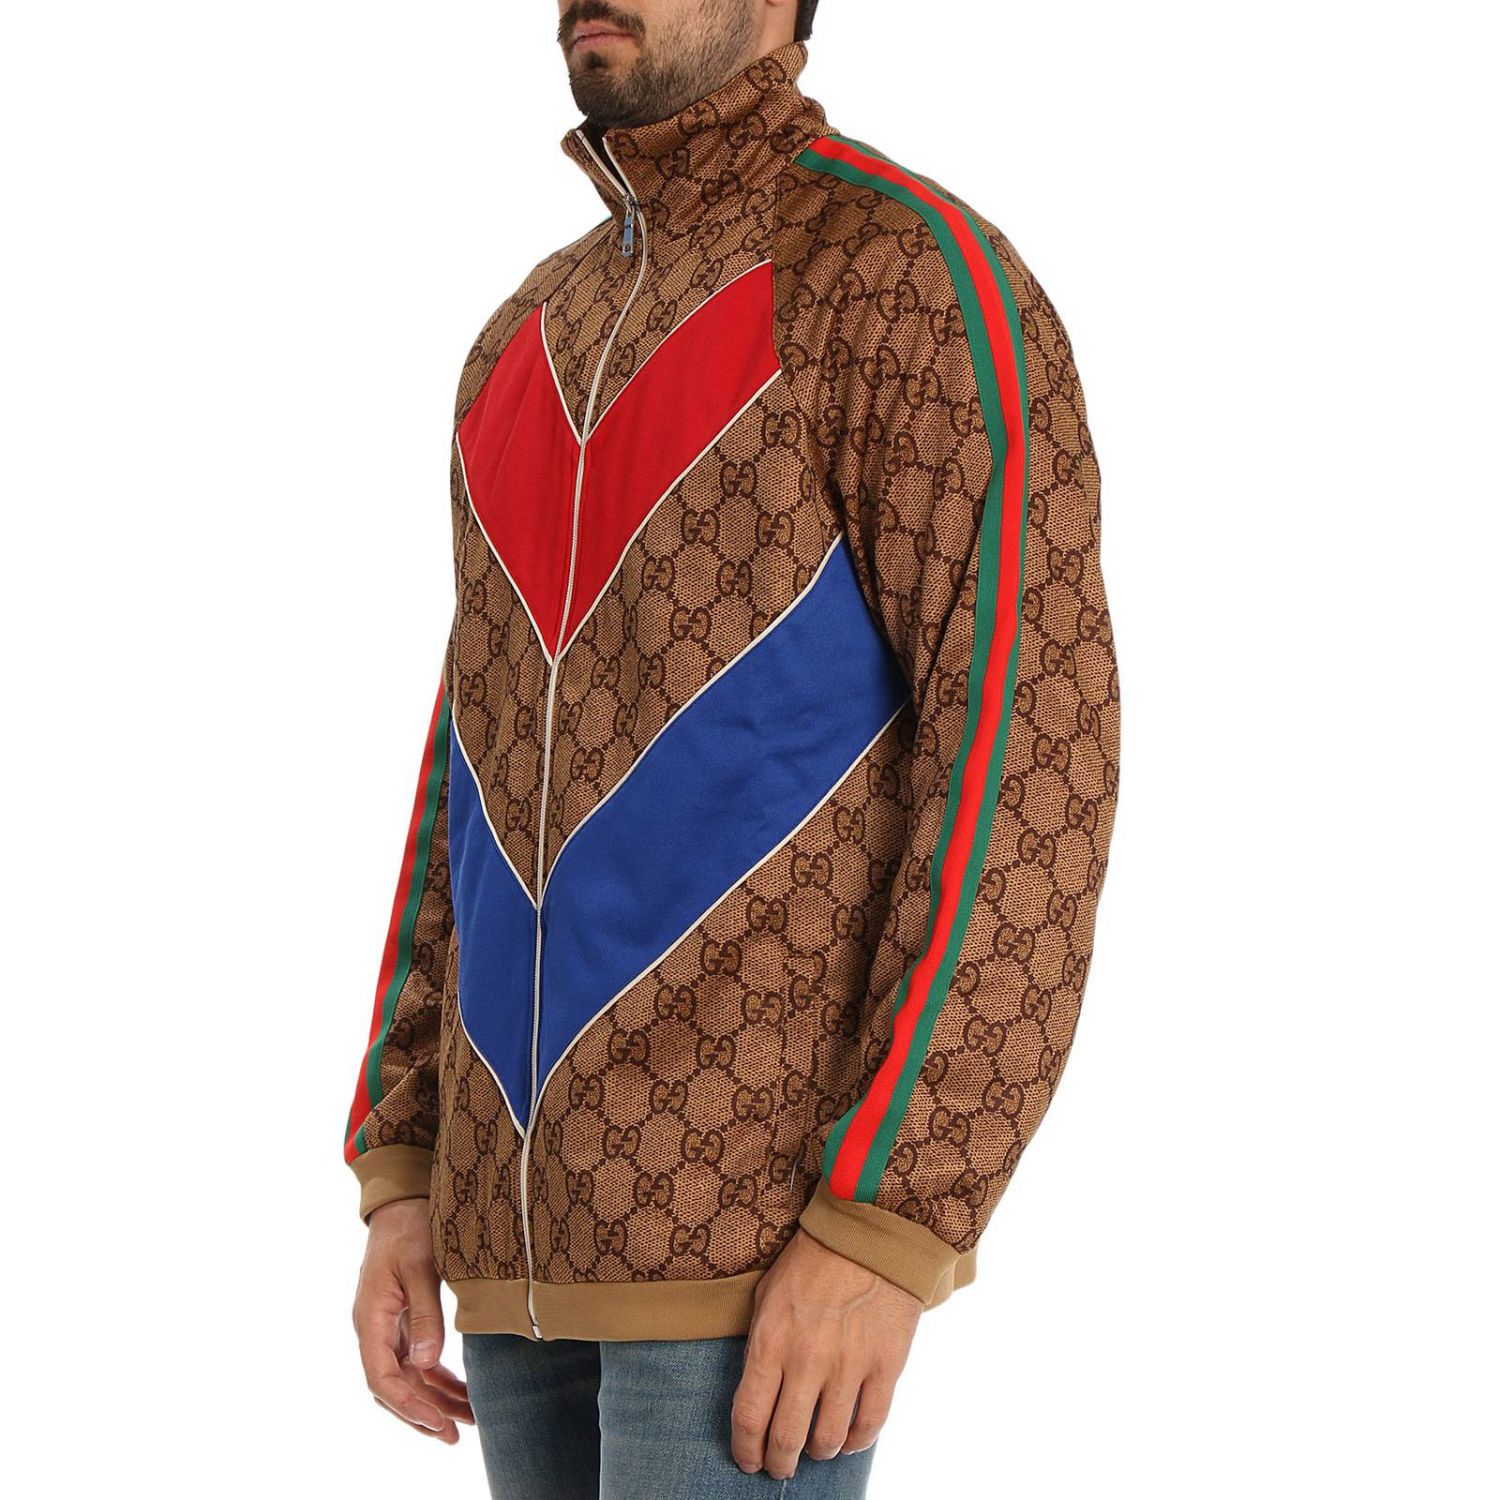 Sweater men Gucci | Sweater Gucci Men Beige | Sweater Gucci 523488 ...